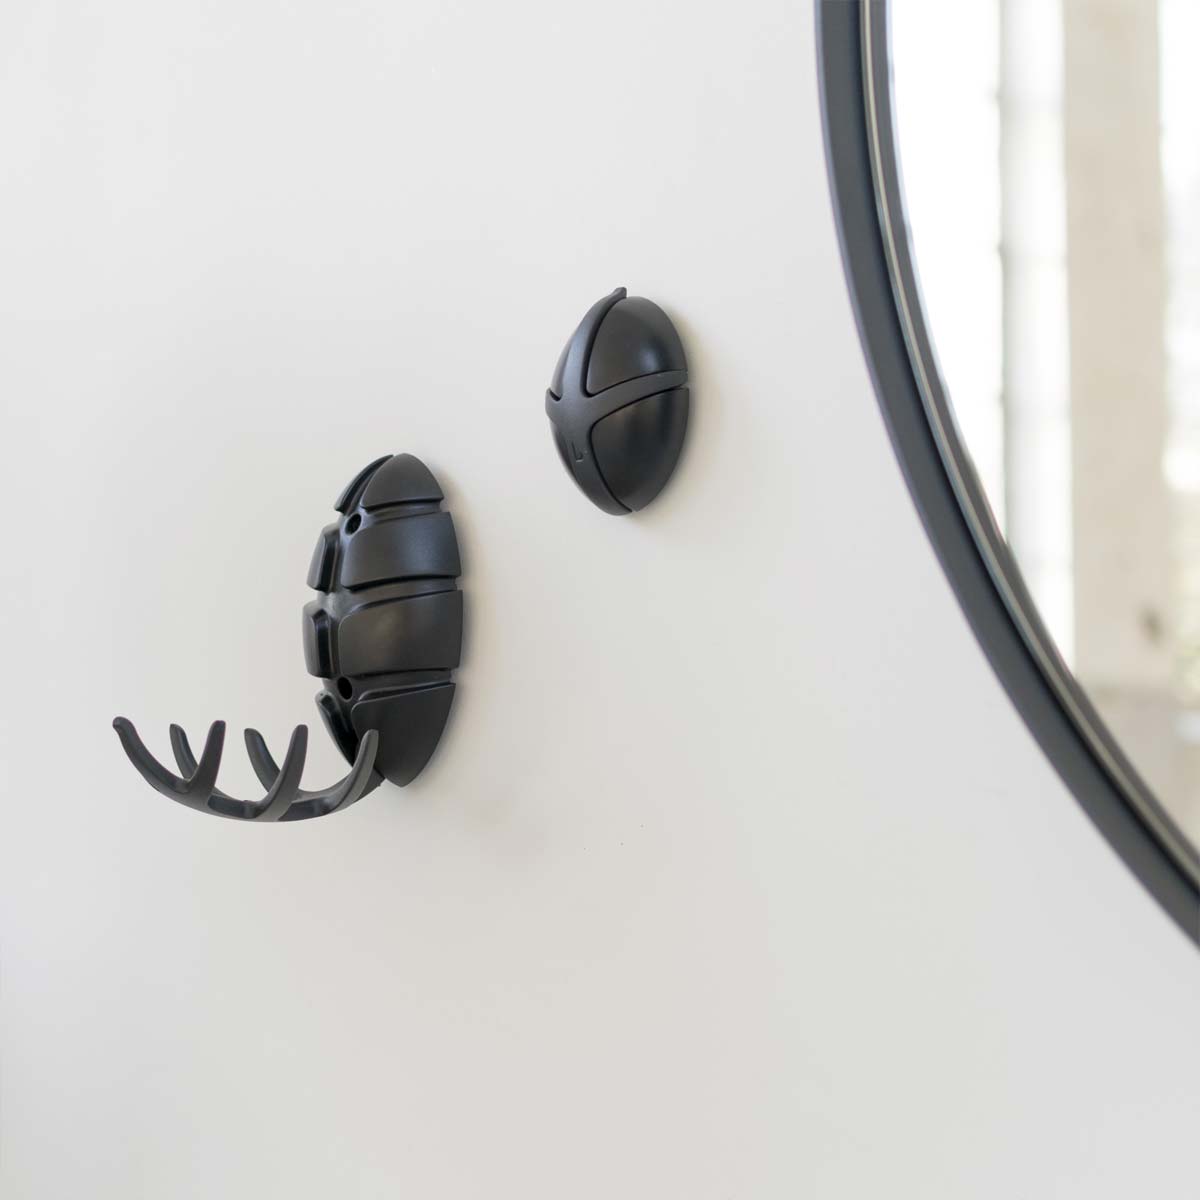 Bug Wandgarderobe - der kleine Käfer ist und leistet großartiges